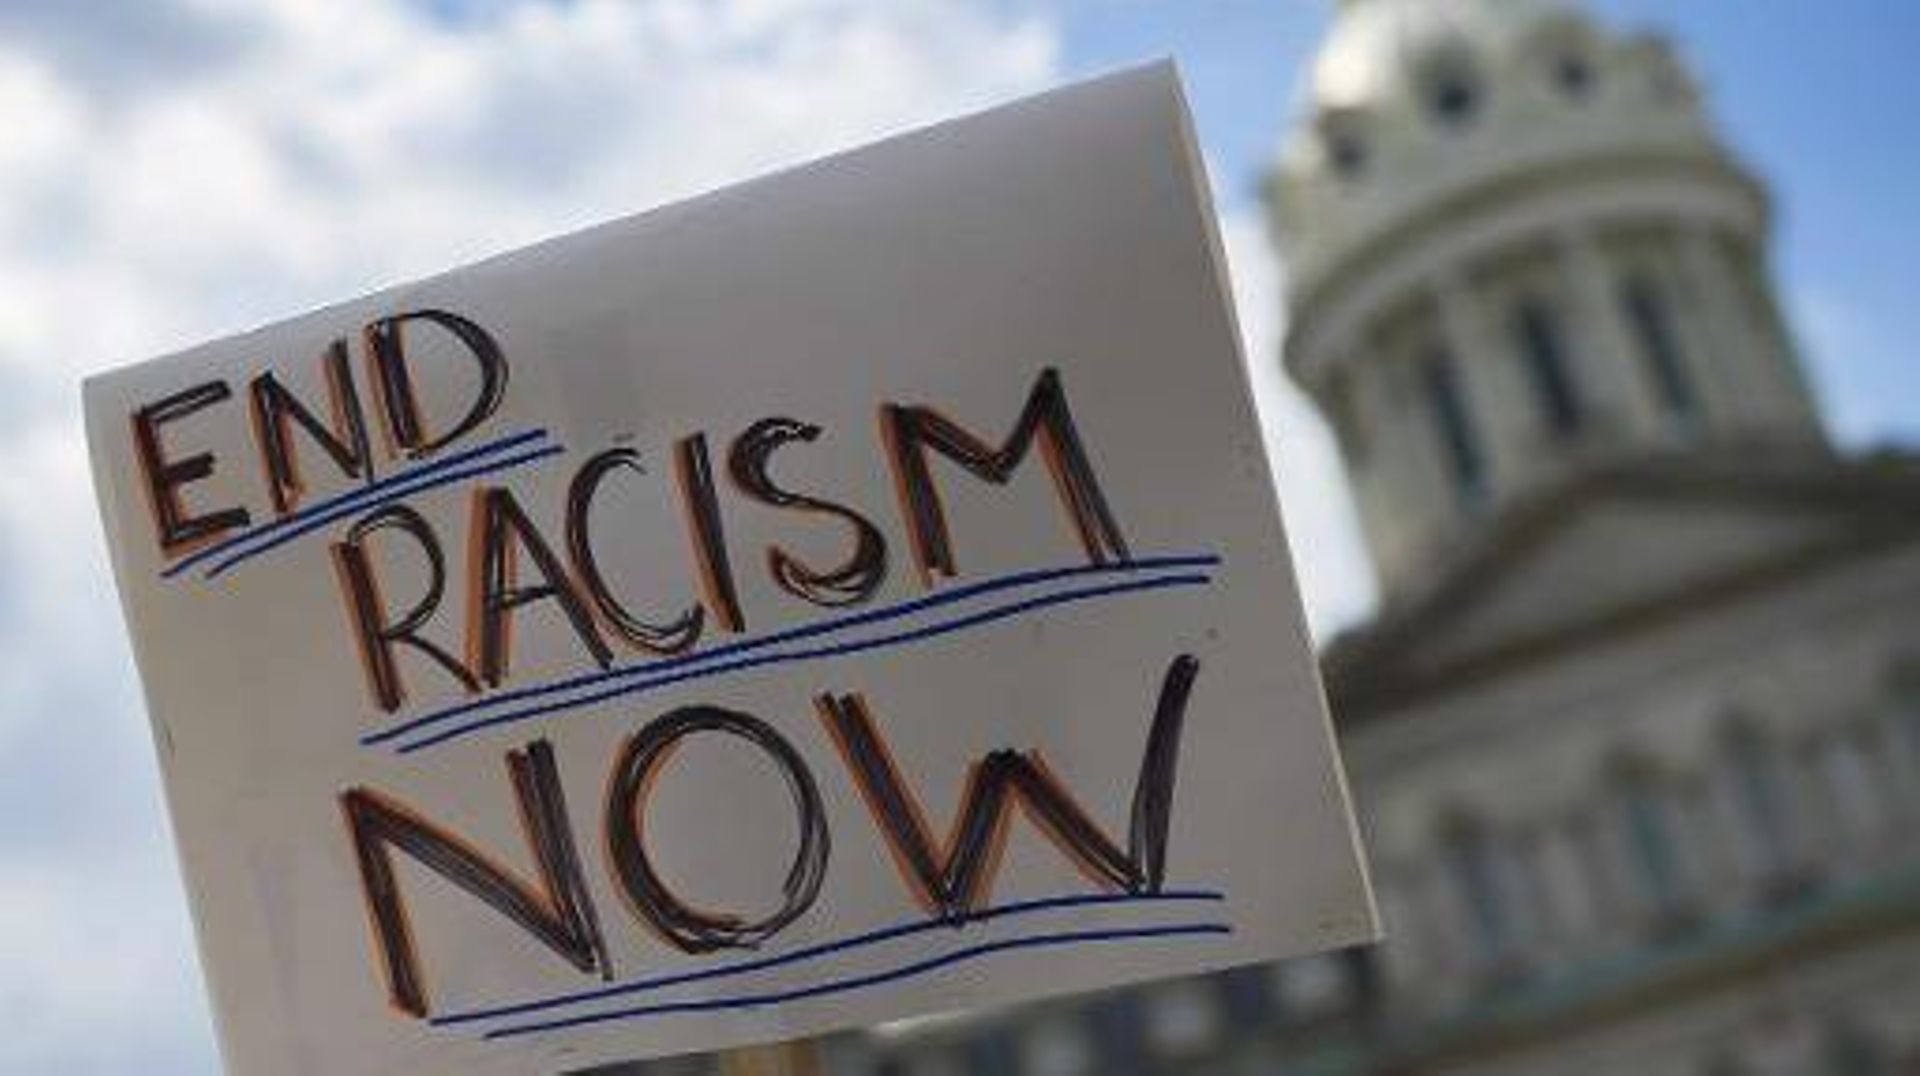 Une pancarte appellant à mettre fin au racisme est brandi devant la mairie de Baltimore dans le cadre de la manifestation pour dénoncer les brutalités policières, le 2 mai 2015